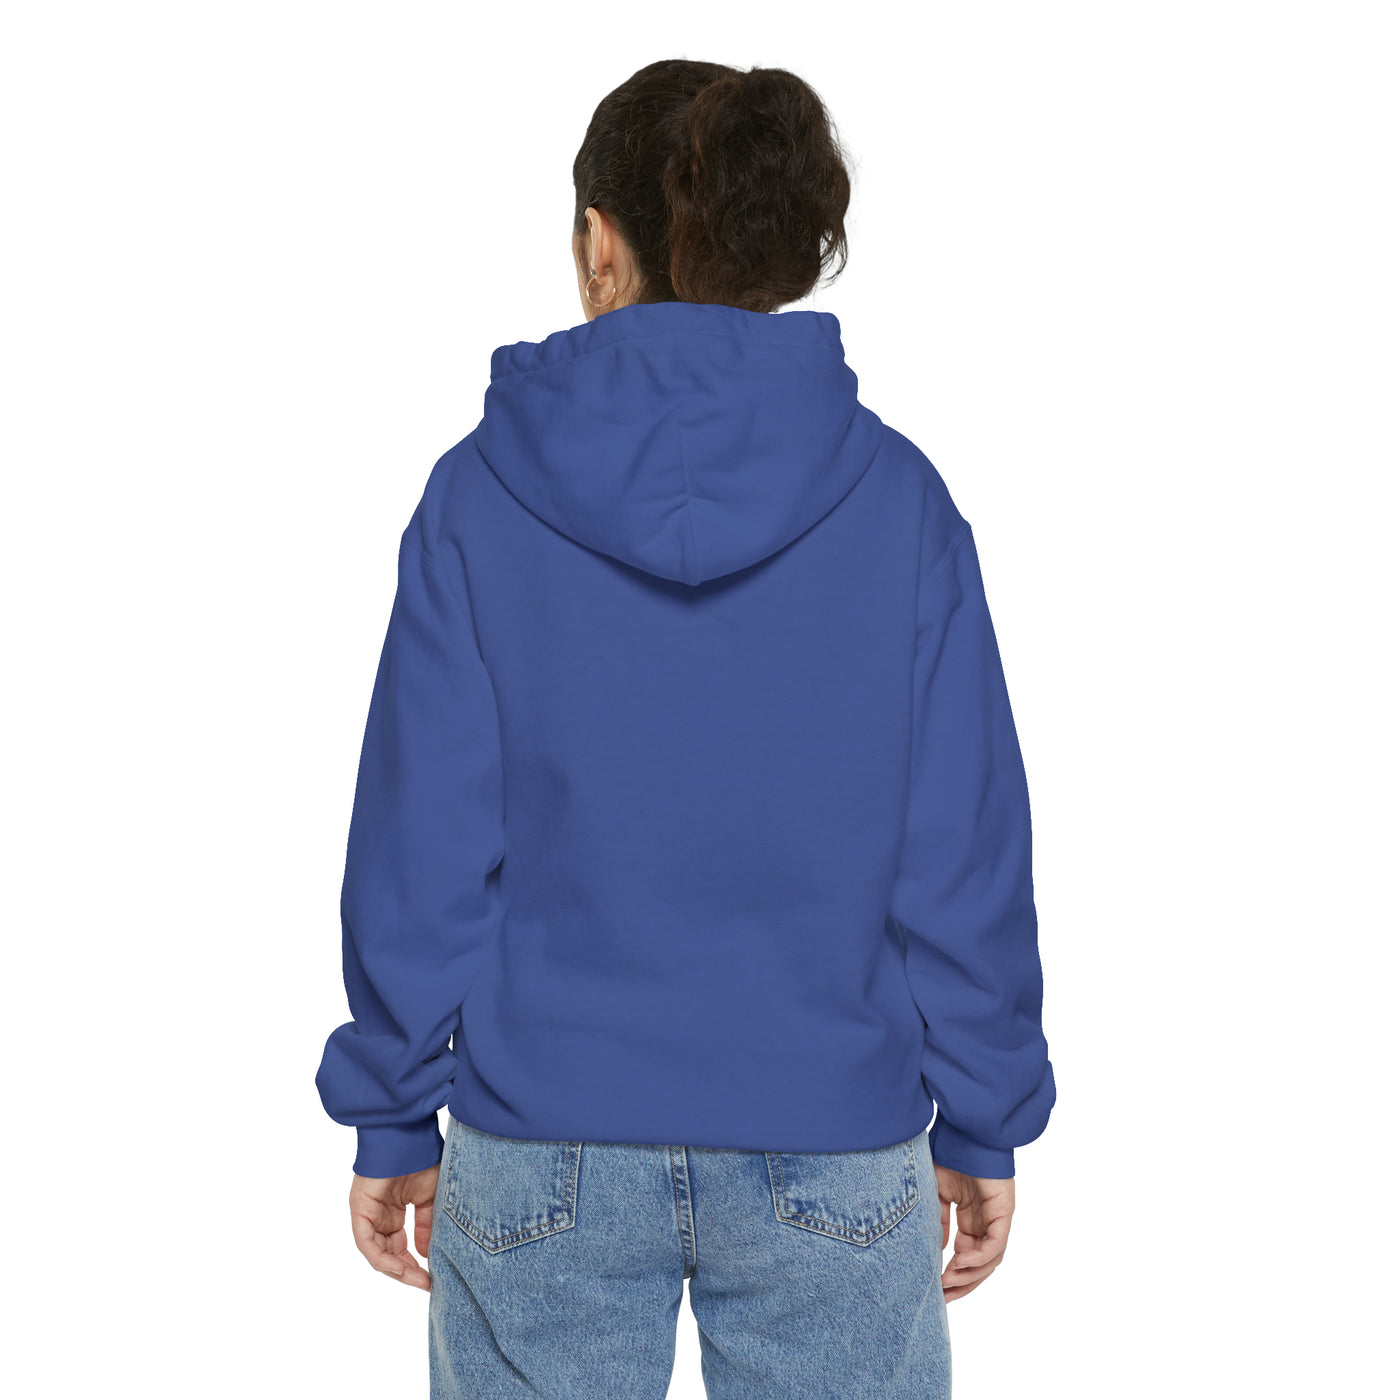 Unisex Garment-Dyed Hoodie - Multifaceted Hoodie